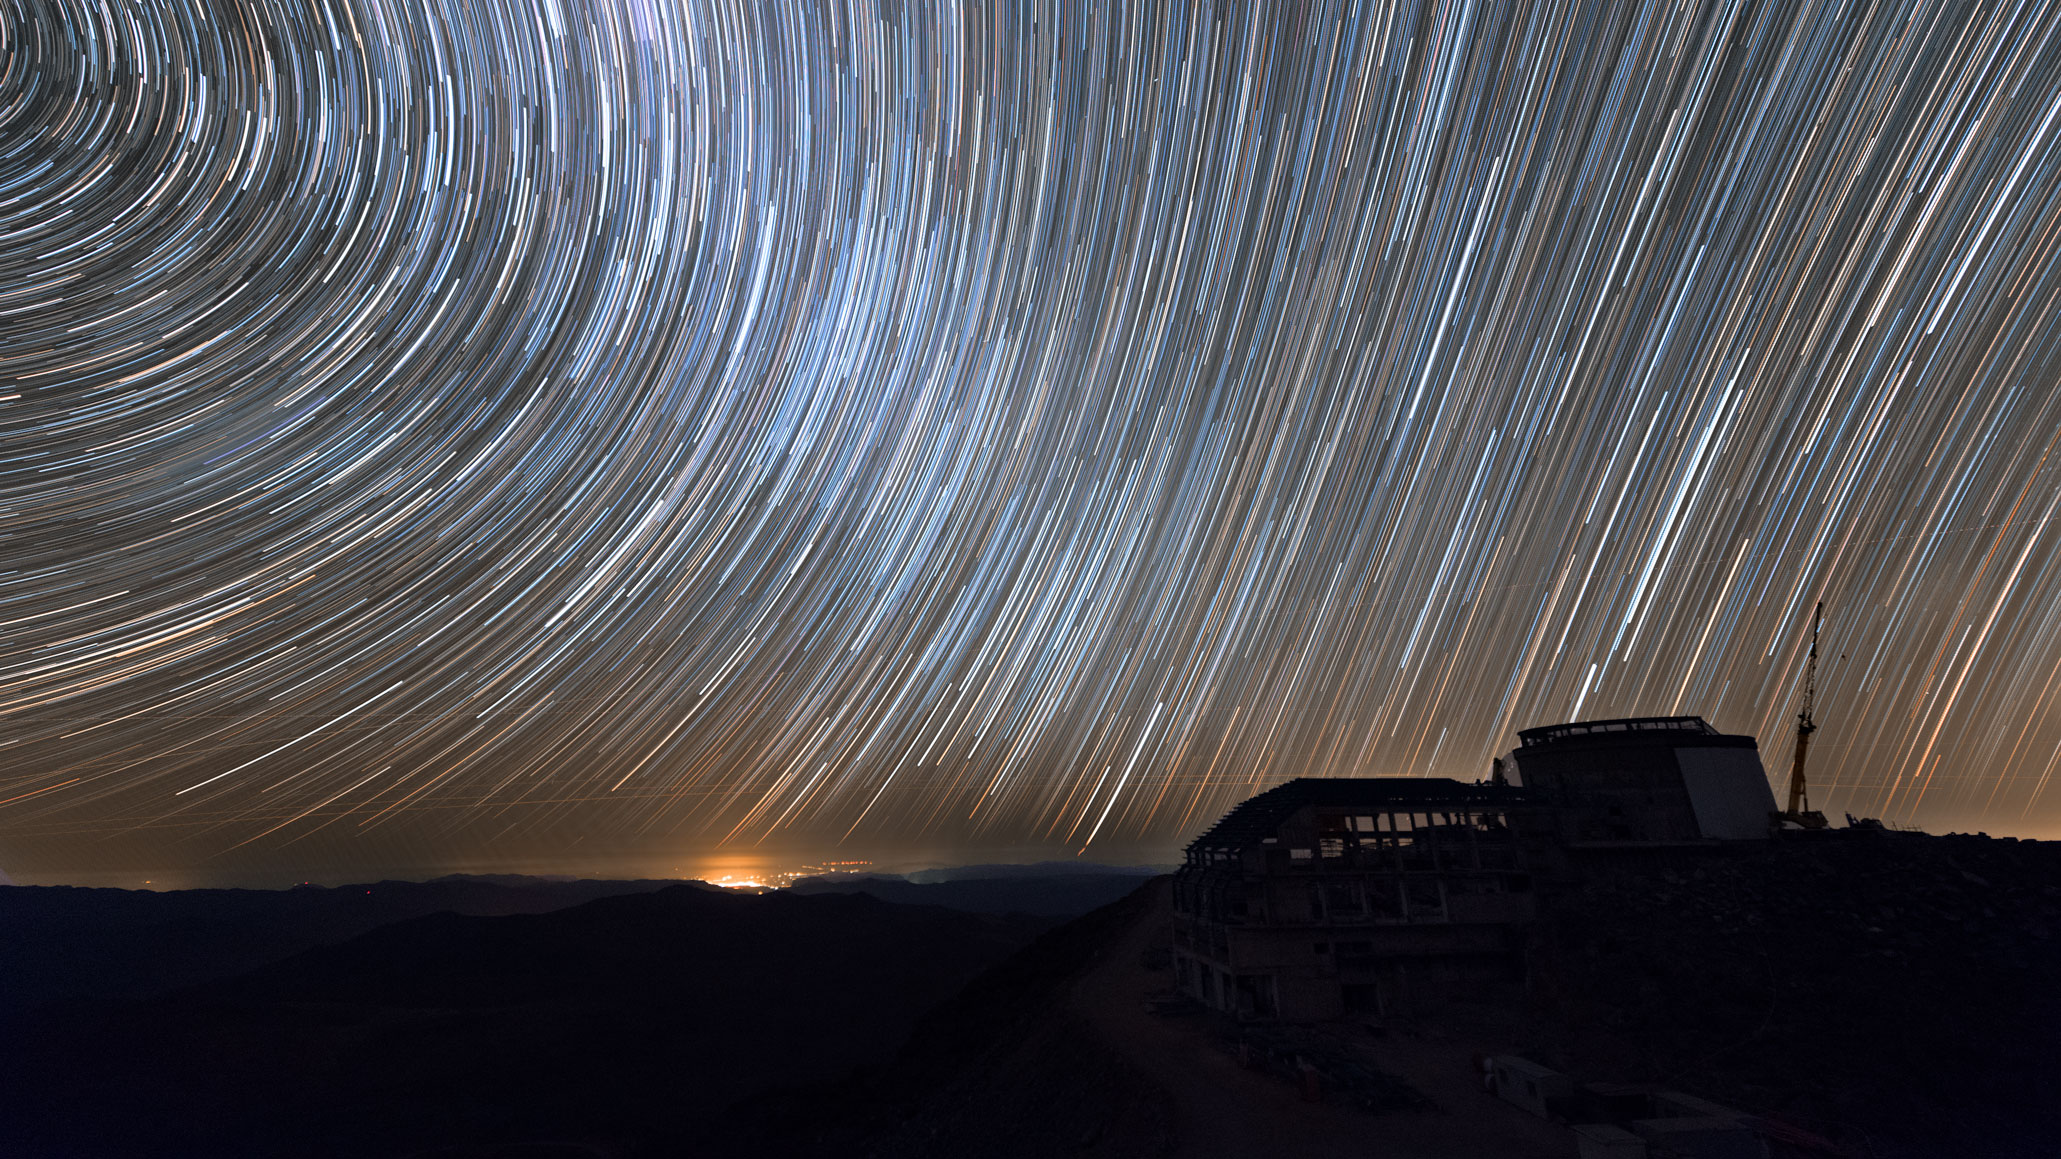 Large Synoptic Survey Telescope and night sky